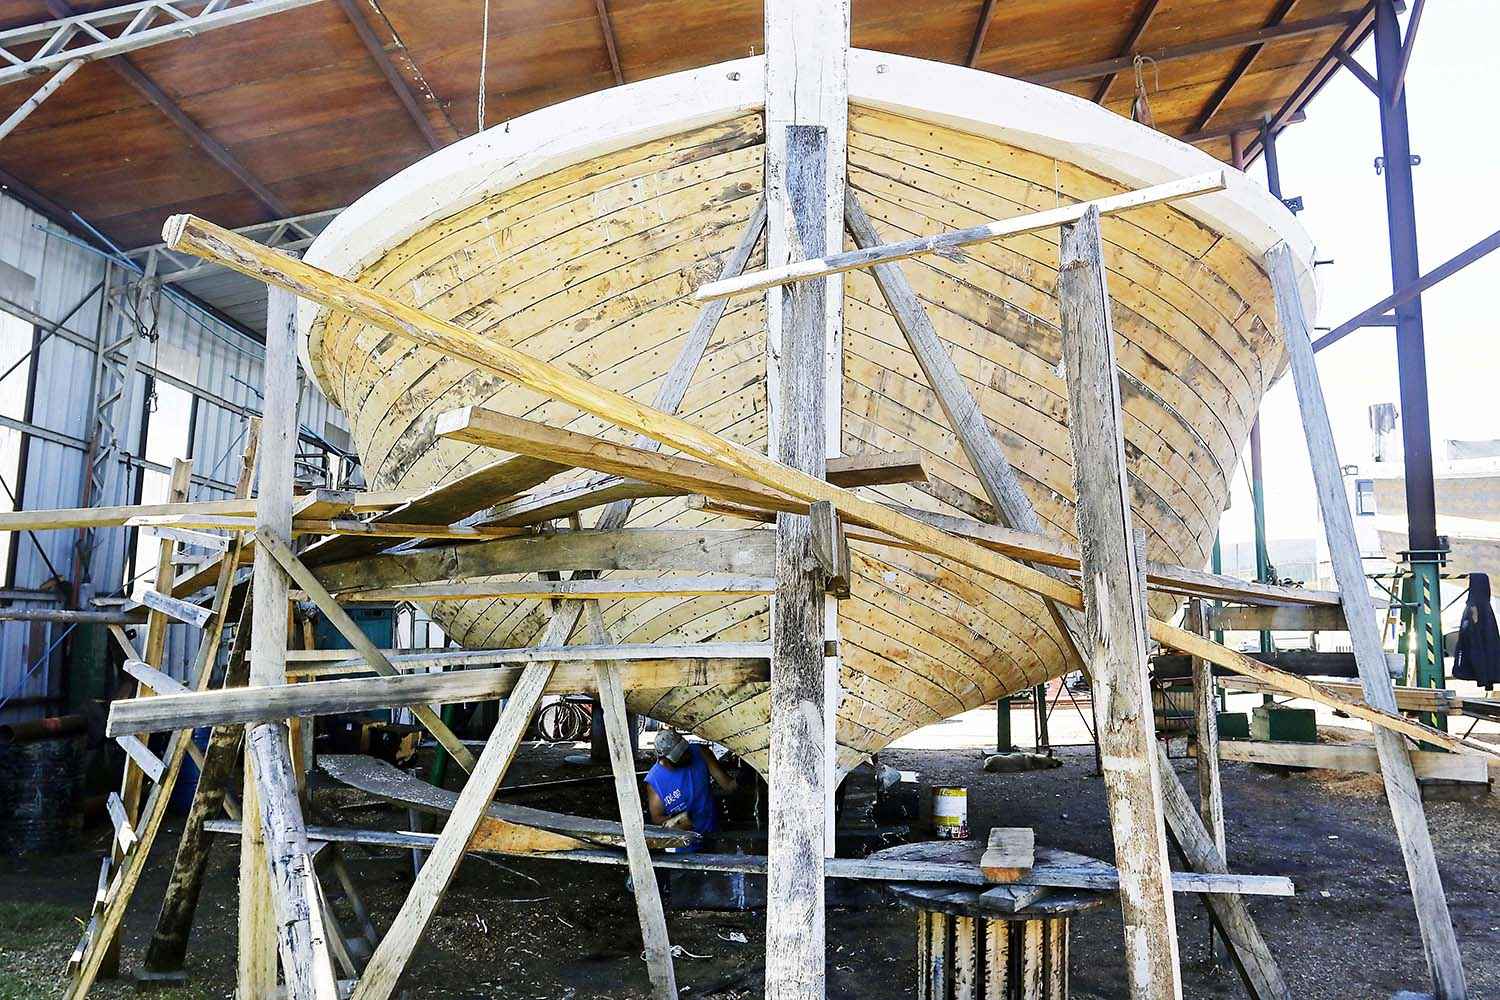 Constructores de botes de madera se reinventan y apuestan por naves más sofisticadas para deporte y turismo